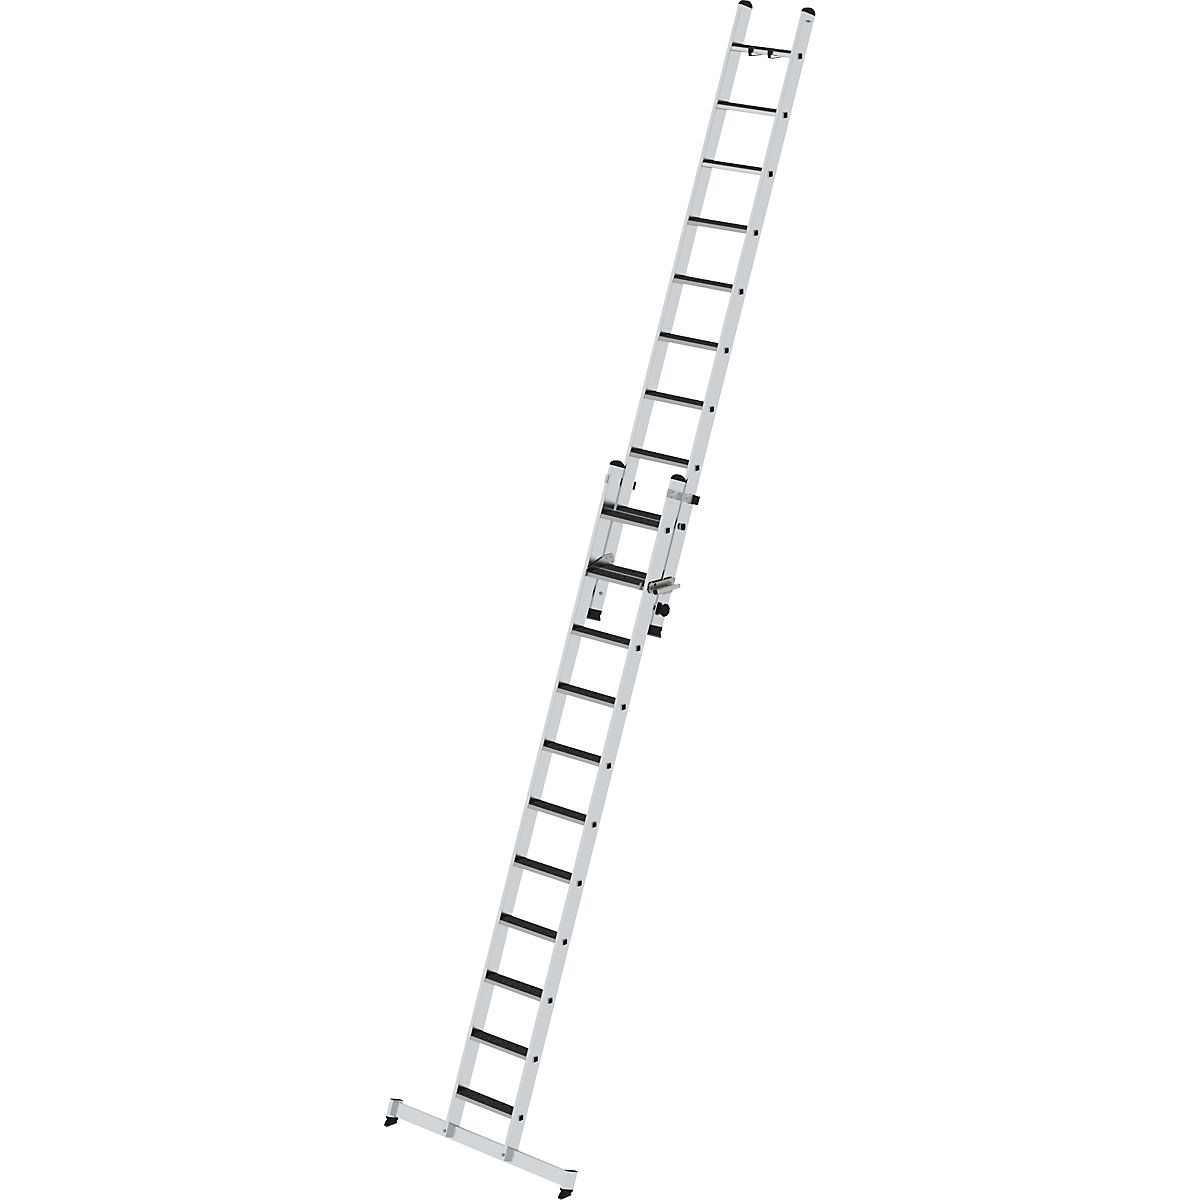 Výsuvný žebřík se stupni, dvoudílný – MUNK, příčník nivello® a nášlapná plocha clip-step, 21 stupňů-4